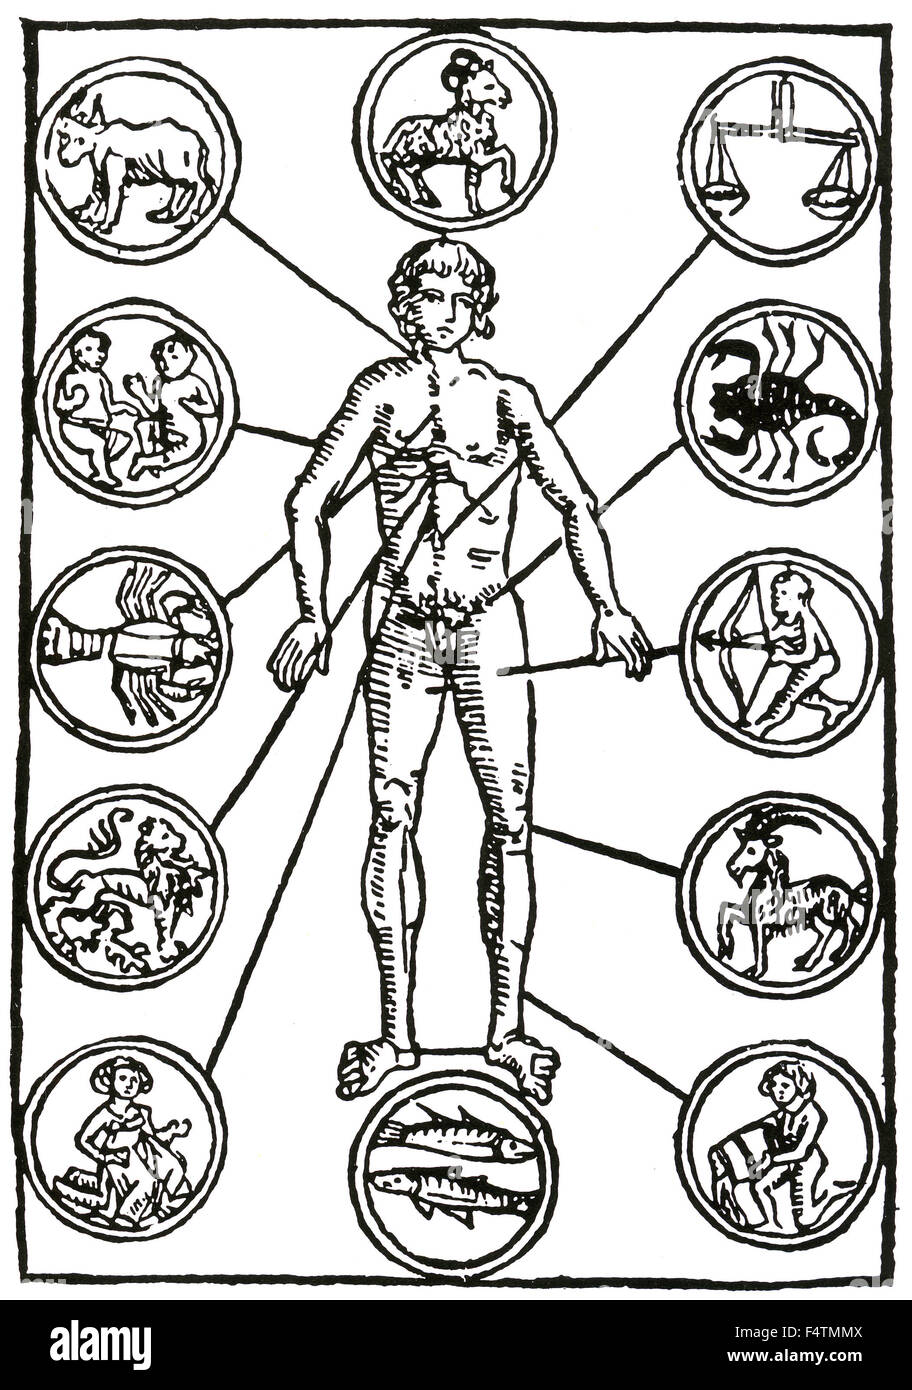 ZODIAC Mann Homo Signorum eine einfache 15. Jahrhundert deutsche Holzschnitt zeigt Teile des Tierkreises verbunden mit verschiedenen Teilen des menschlichen Körpers Stockfoto